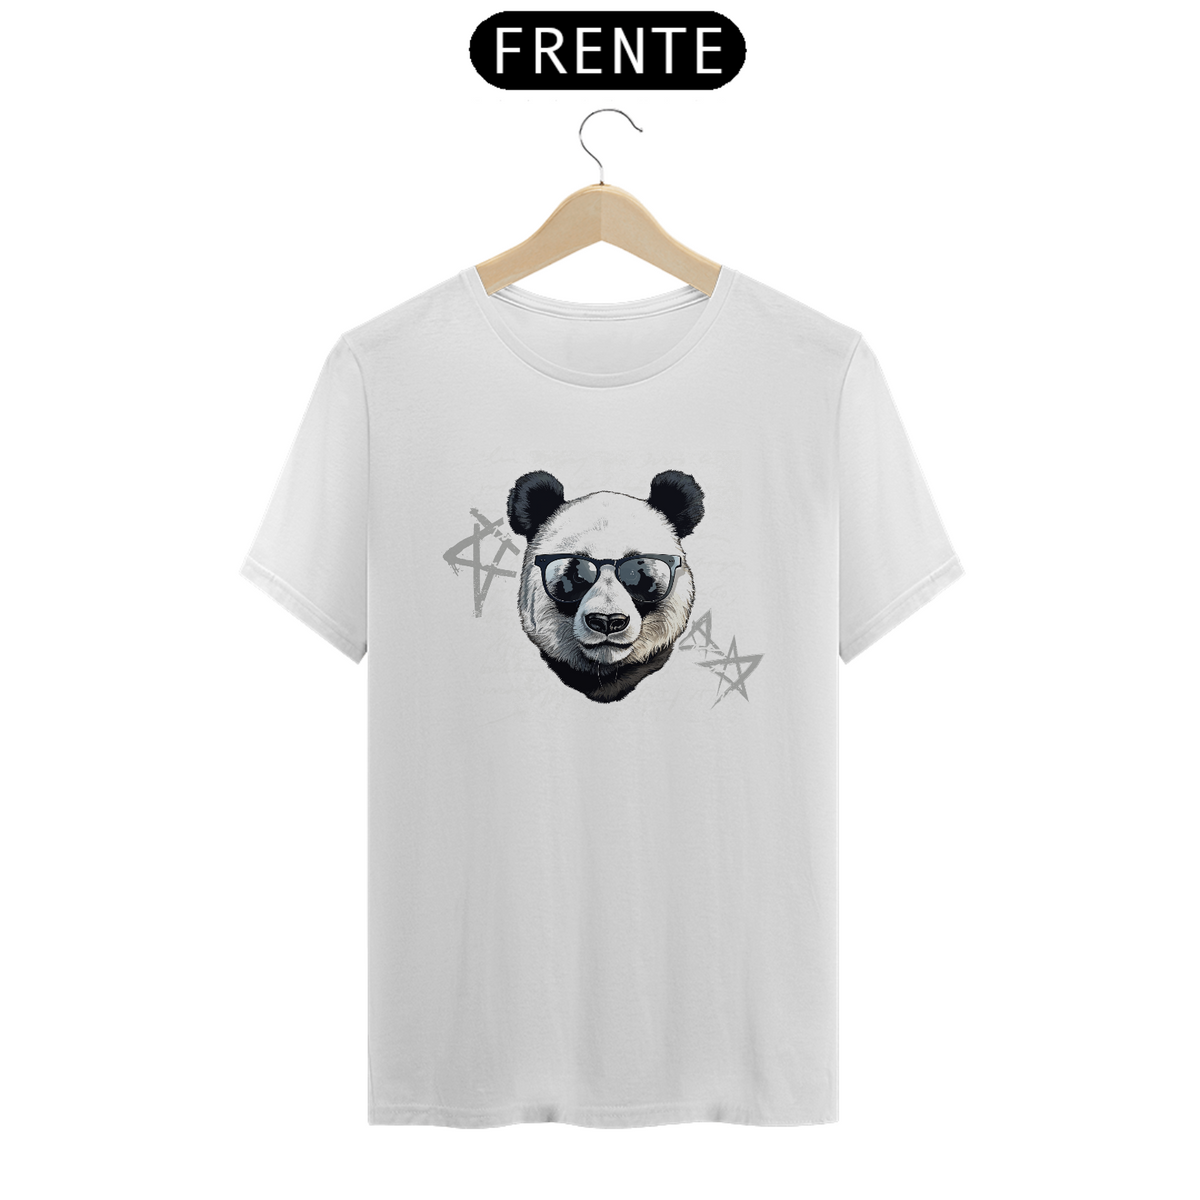 Nome do produto: Camiseta Panda Style